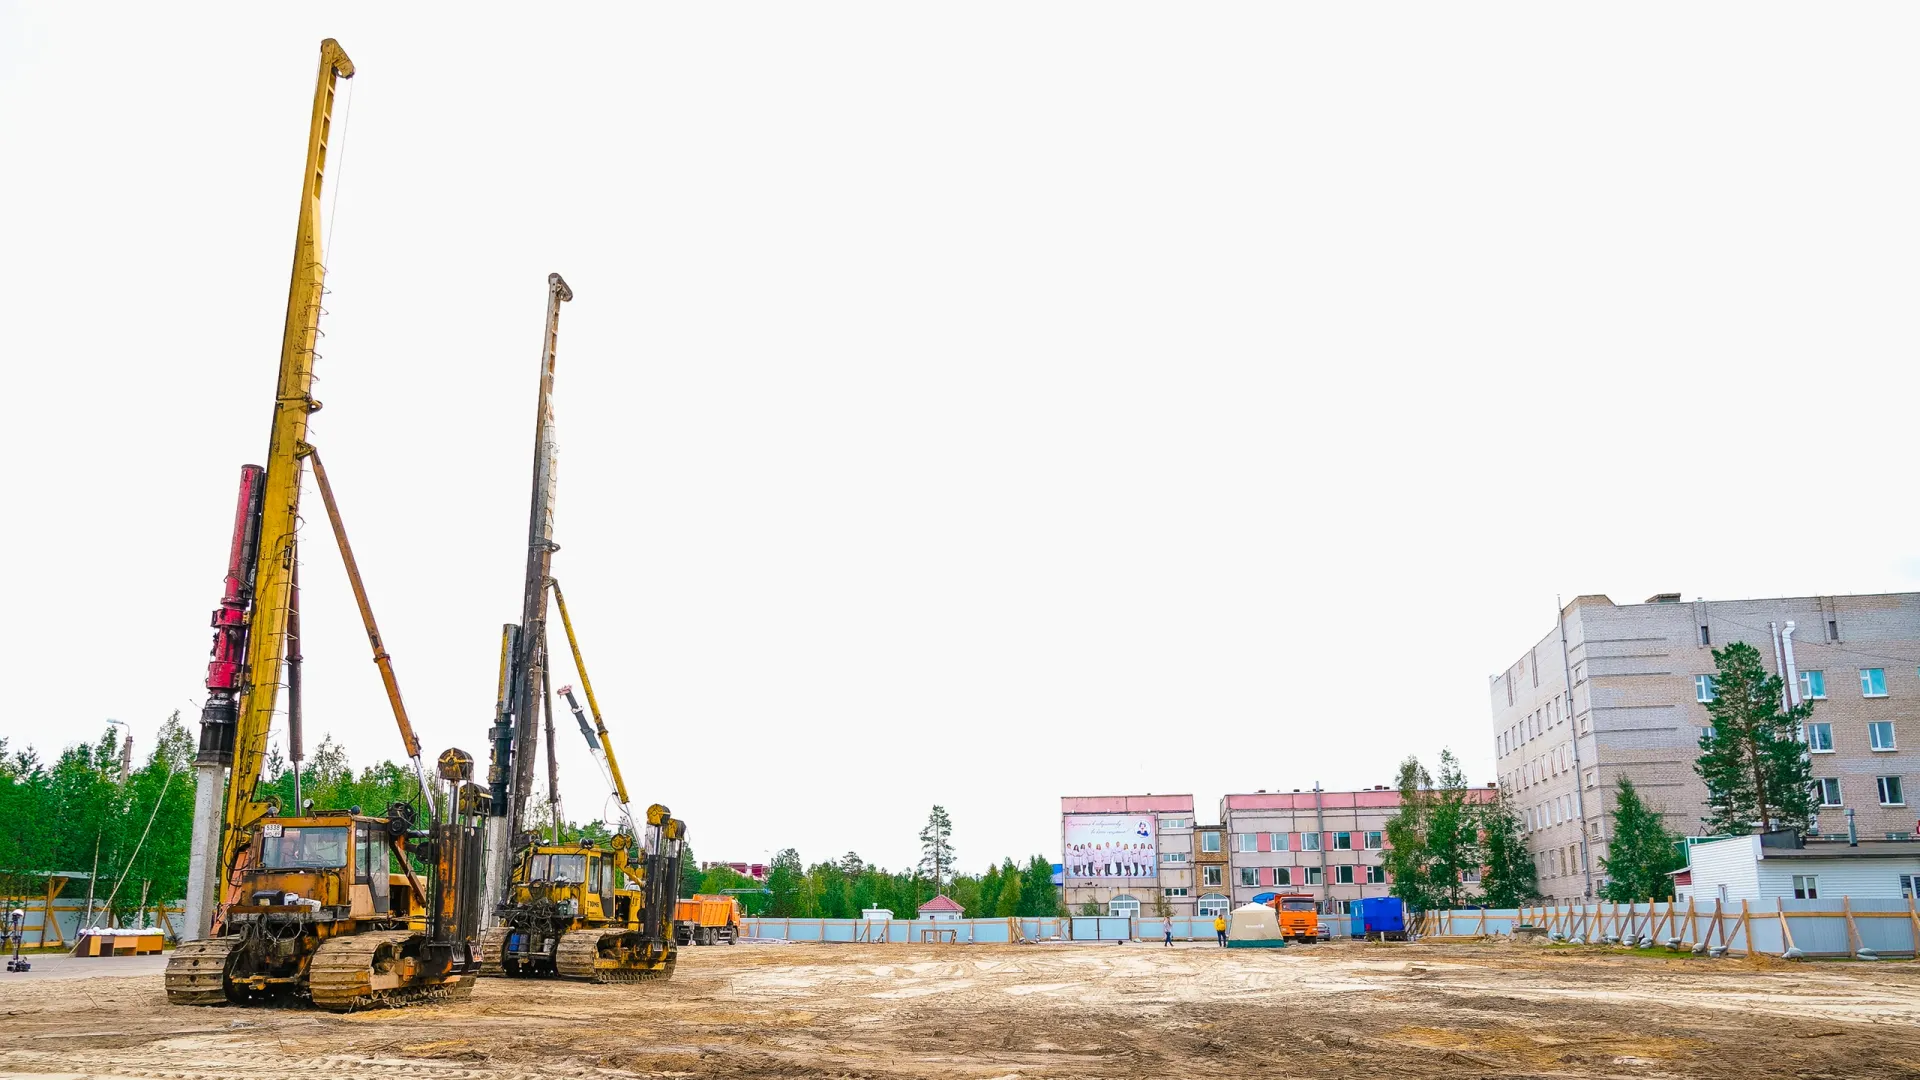 Самую крупную взрослую поликлинику на Ямале начали строить в Ноябрьске. Фото: "Ямал-Медиа".